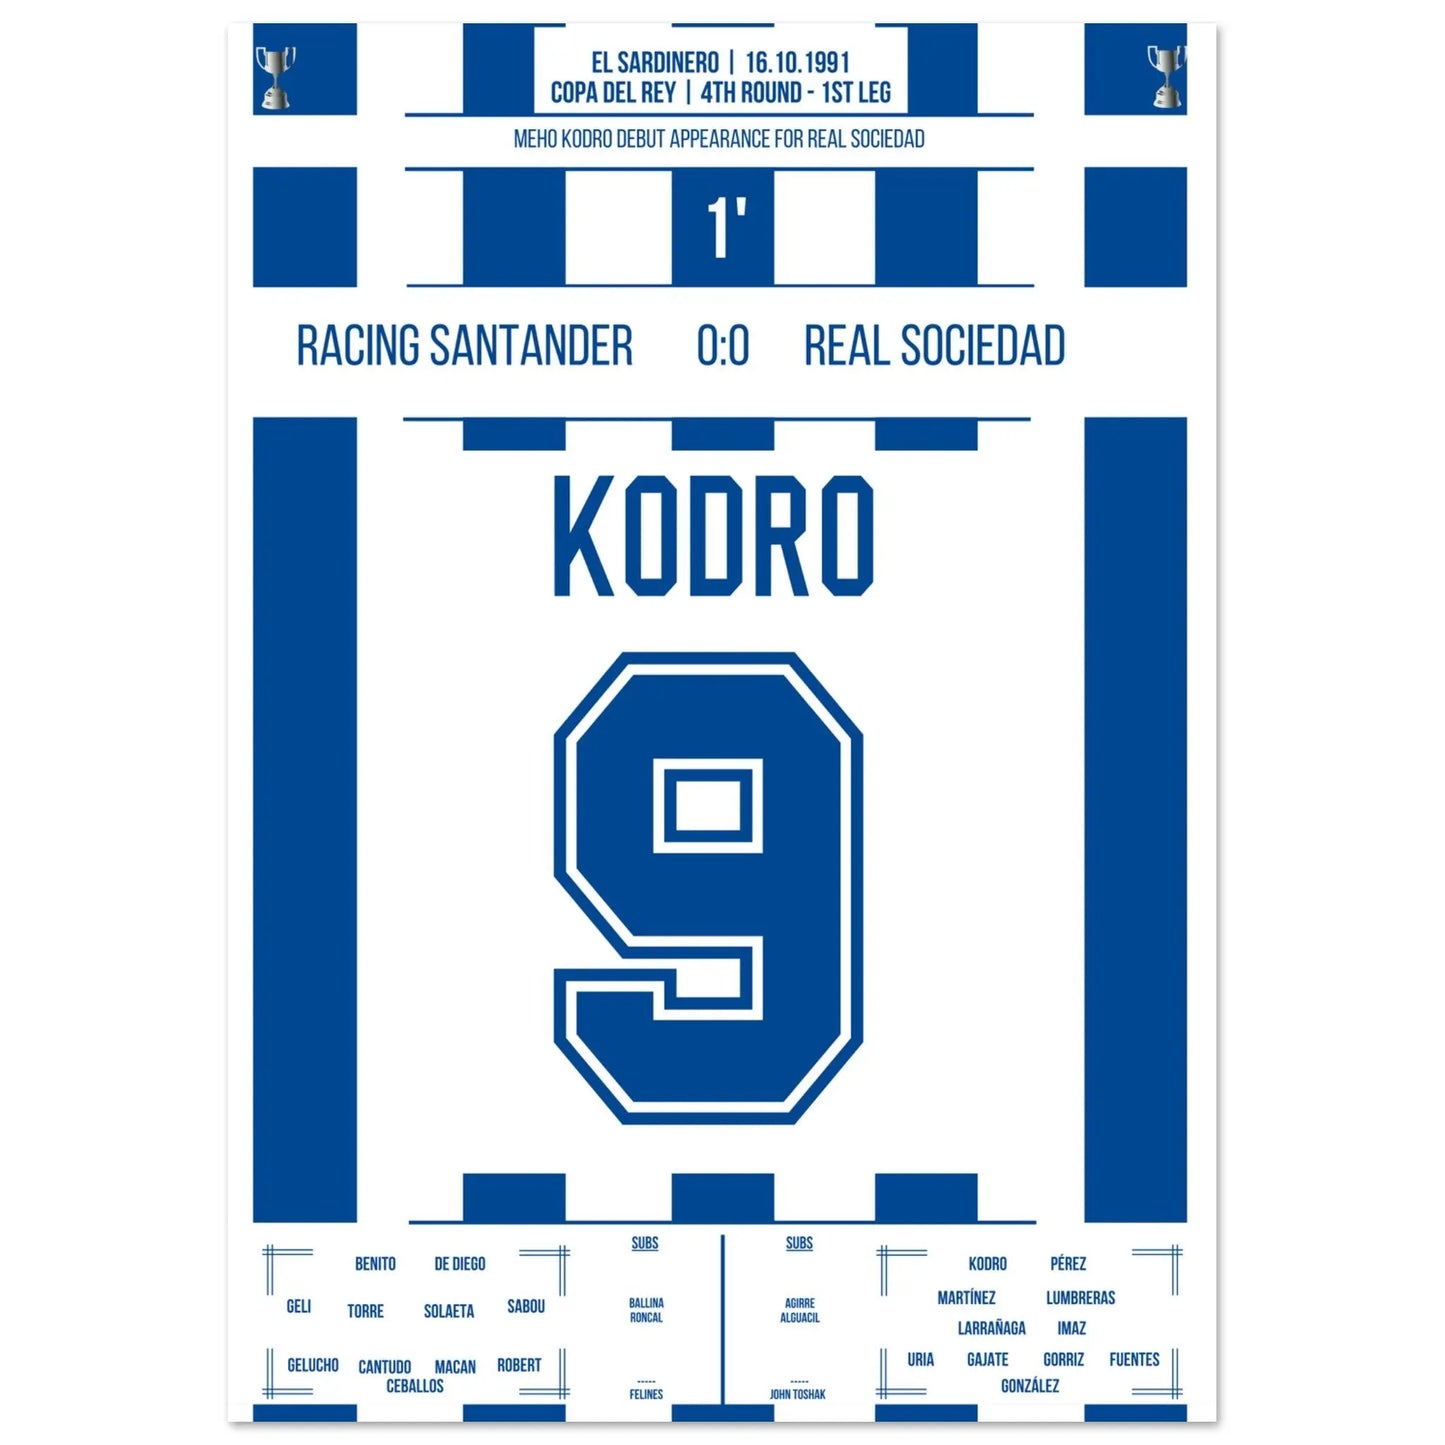 Meho Kodro debuteert voor Real Sociedad